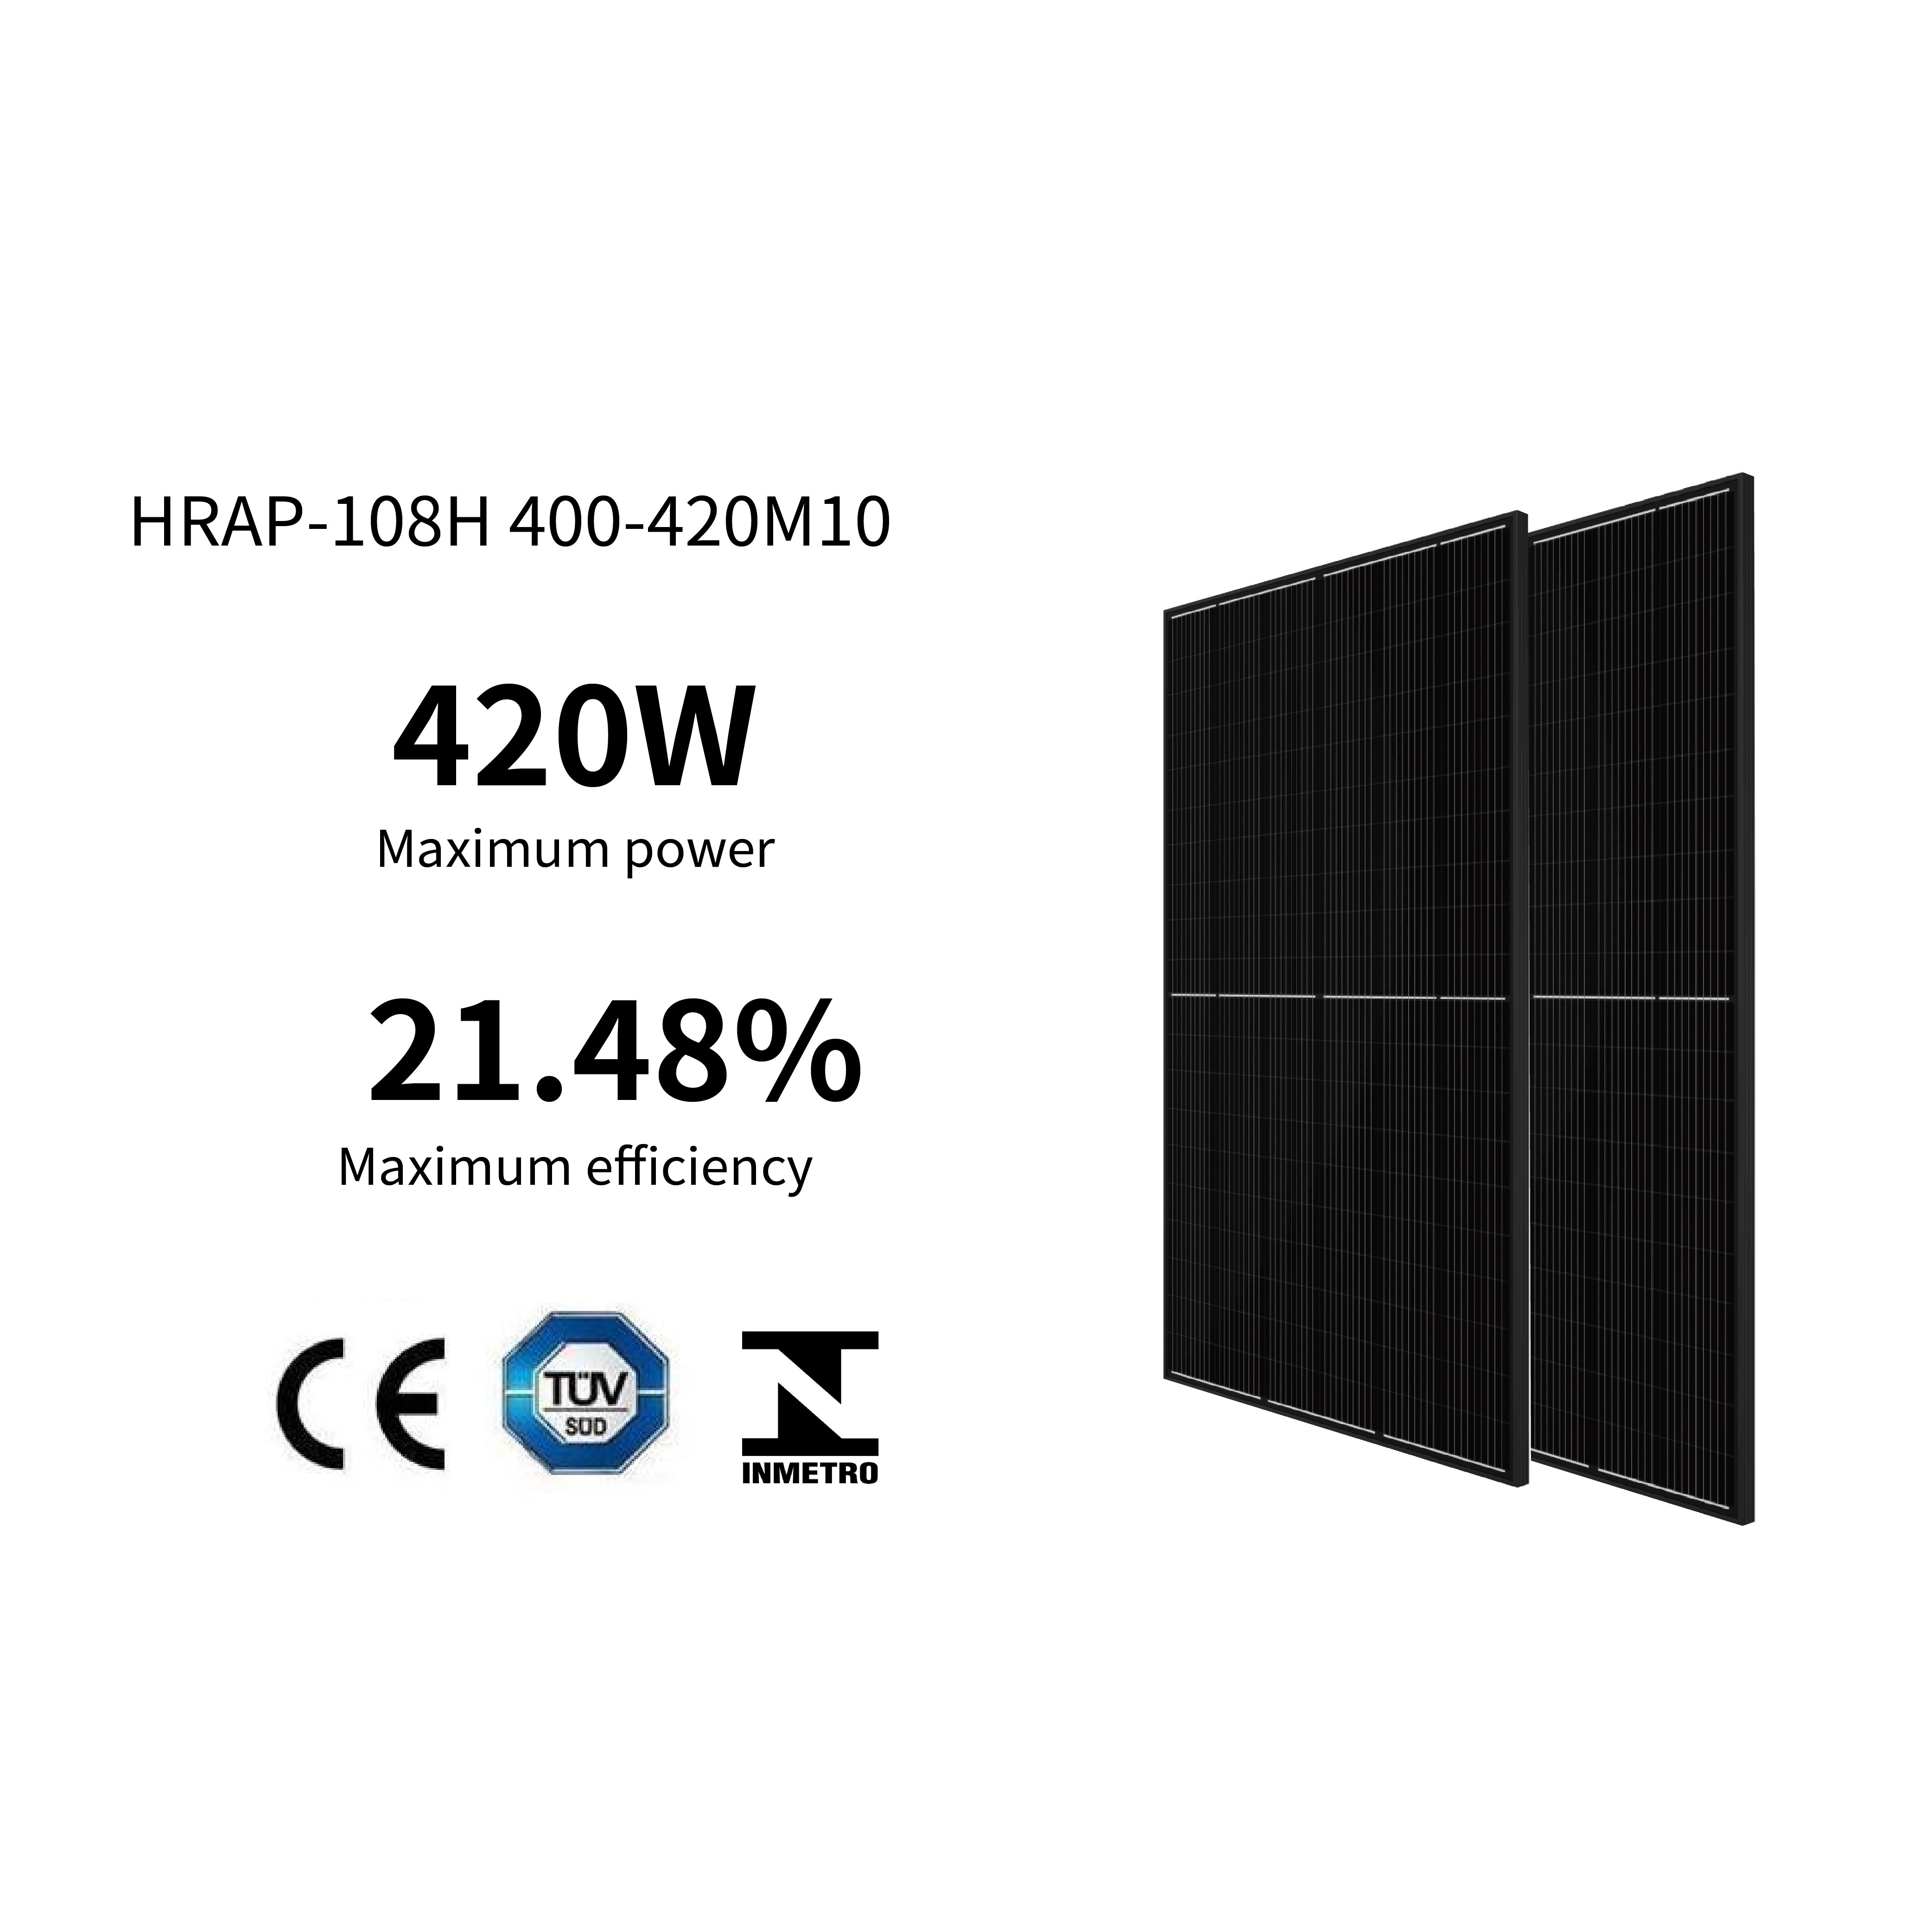 HRAP-108H 400-420M10 Black